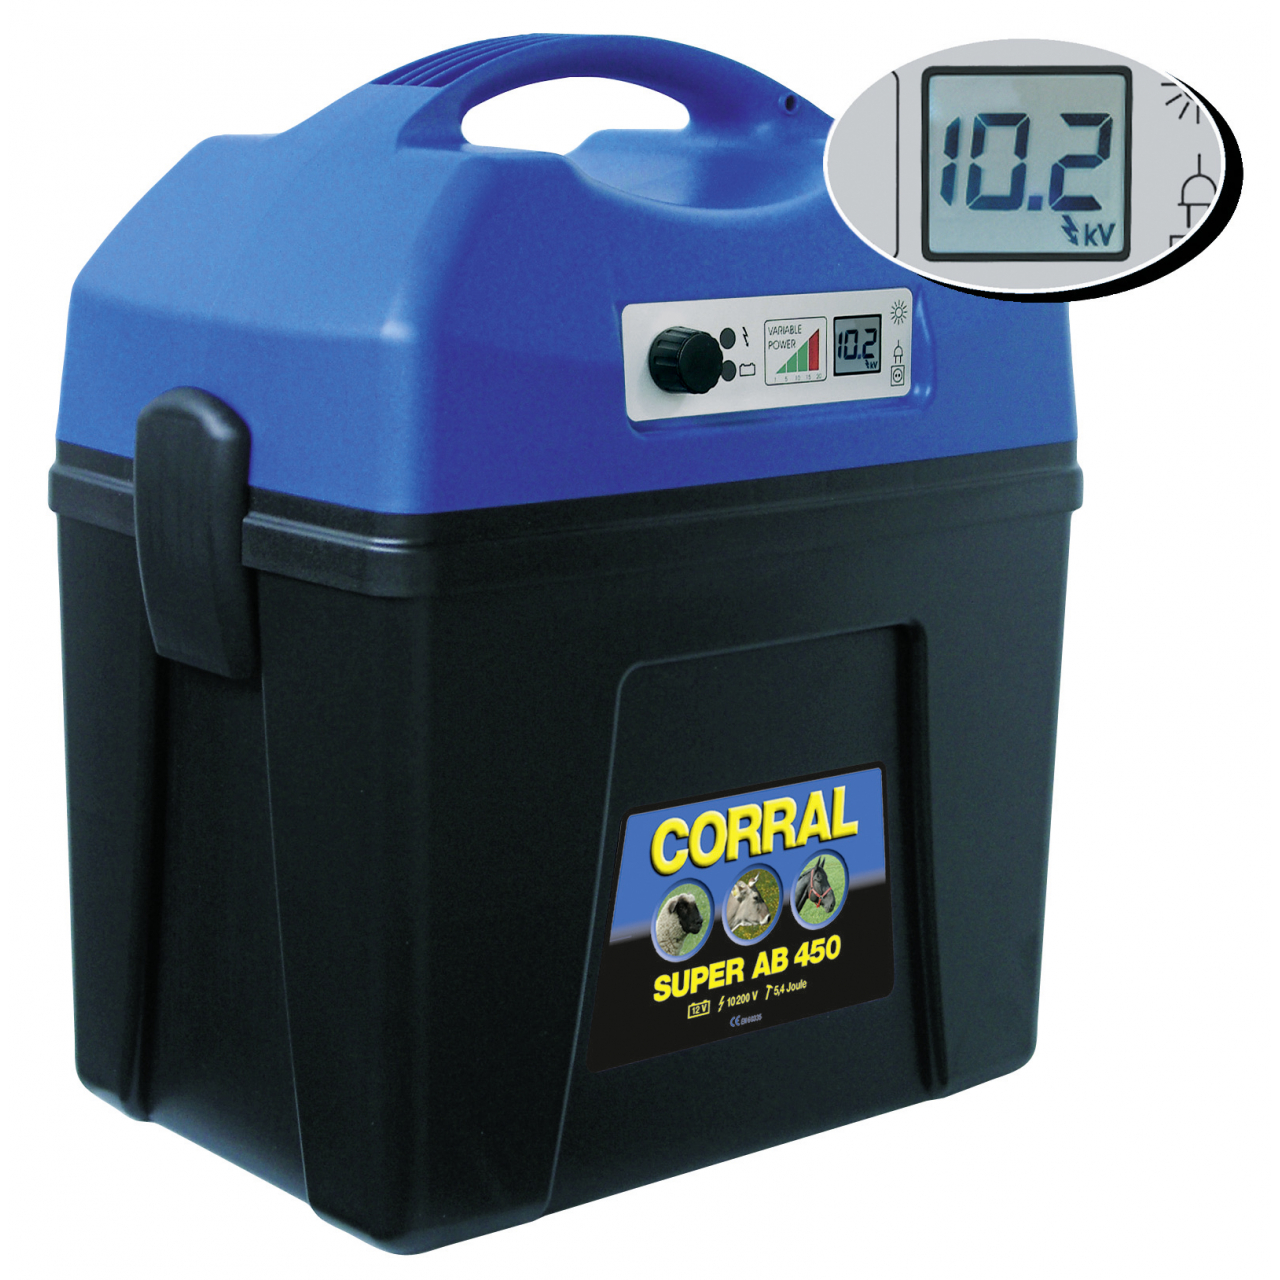 Corral Super AB 450 Digitális Villanypásztor Készülék 12 V - 5,4 J